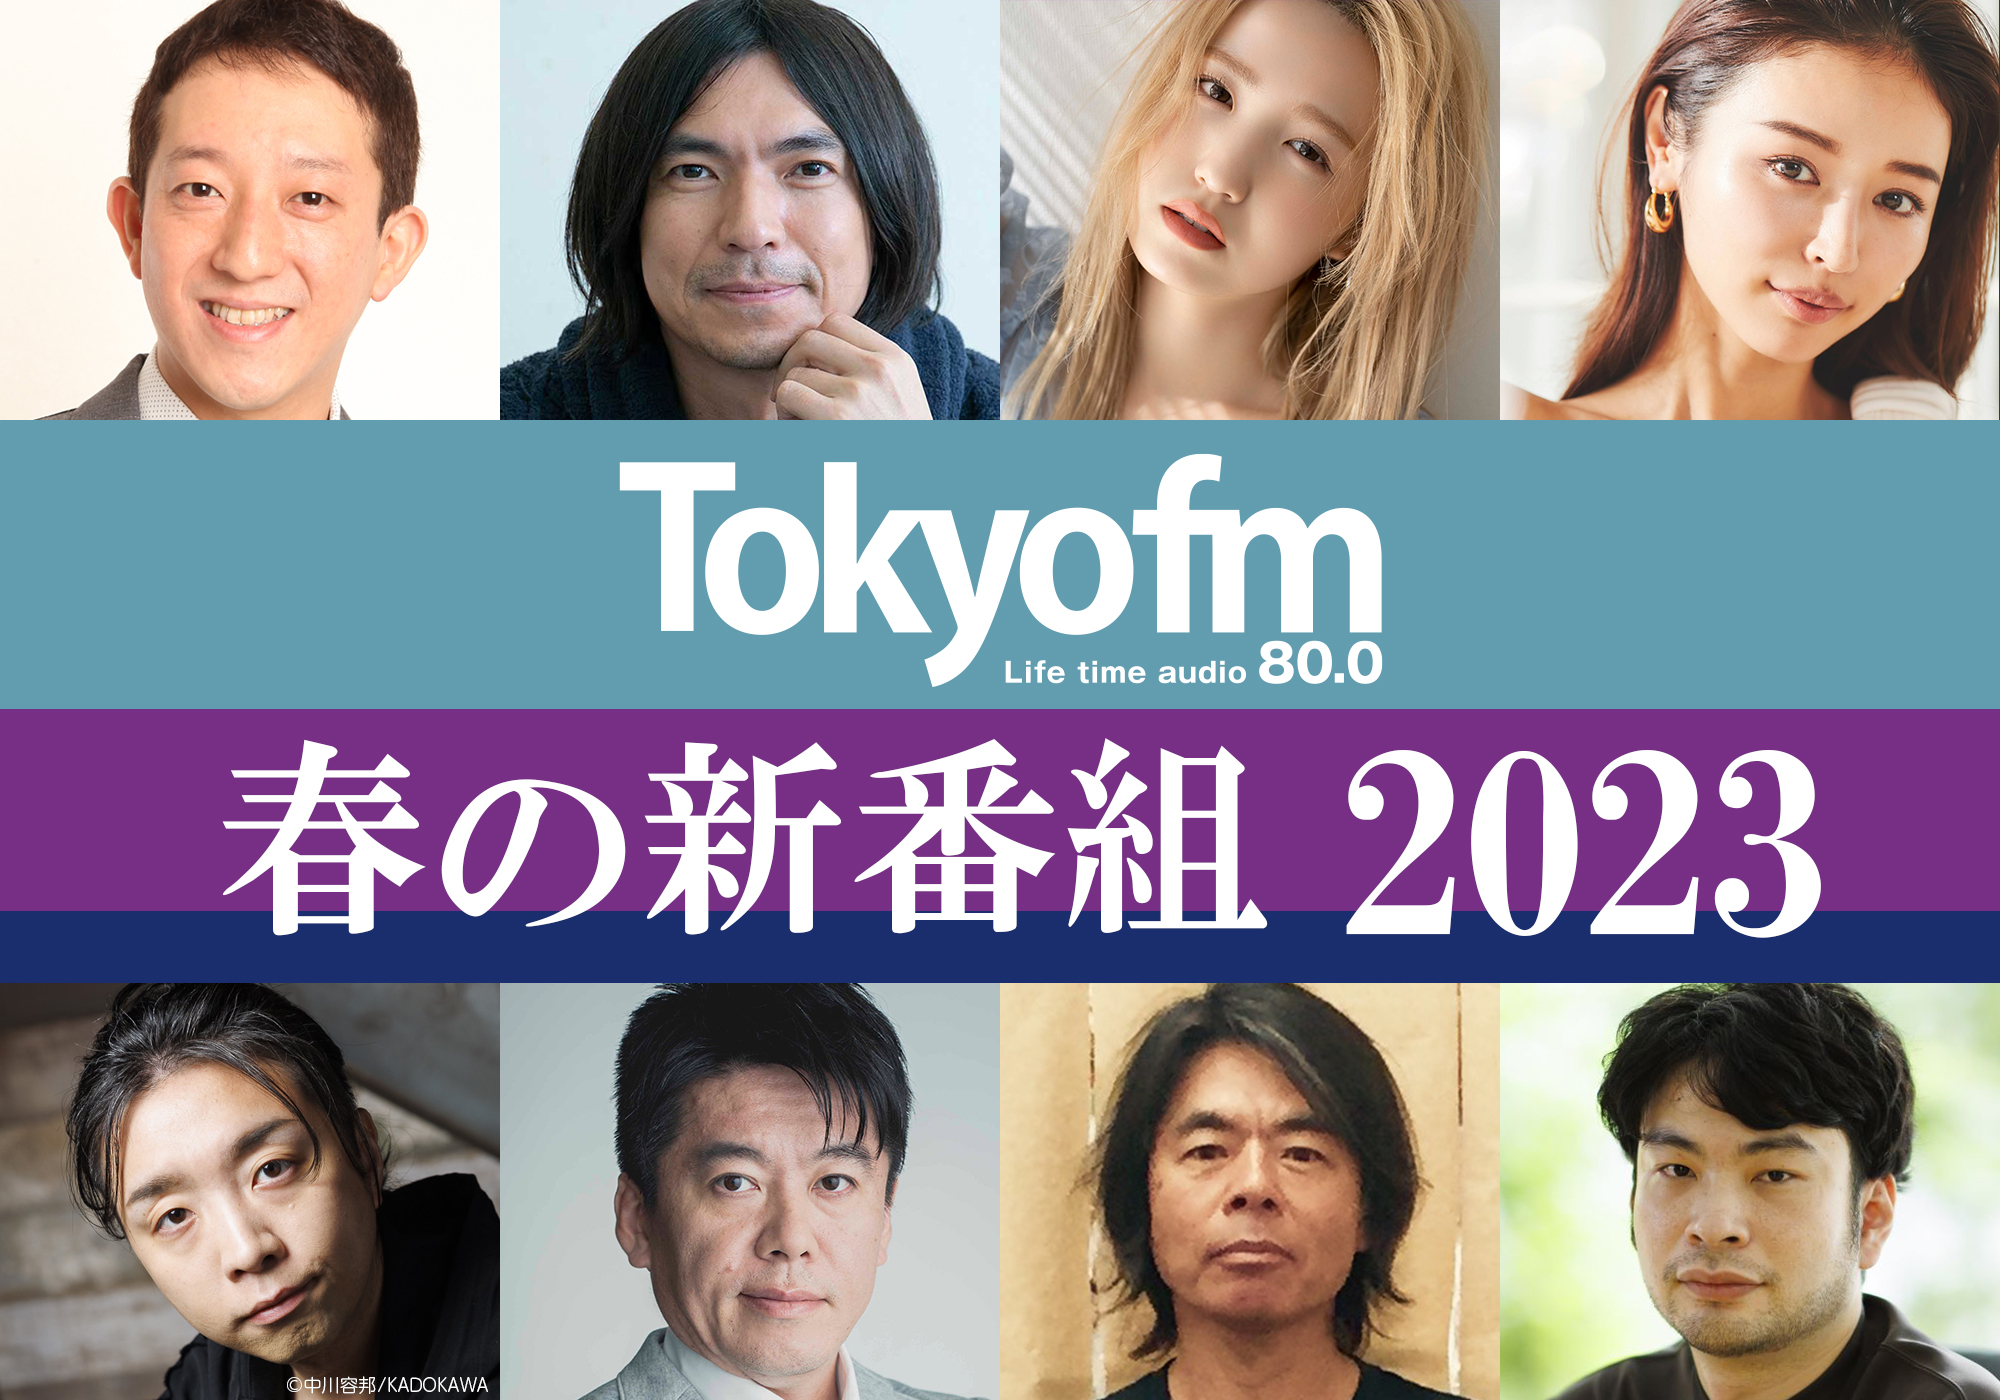 TOKYO FM 春の新番組 2023 - TOKYO FM Information - TOKYO FM 80.0MHz -